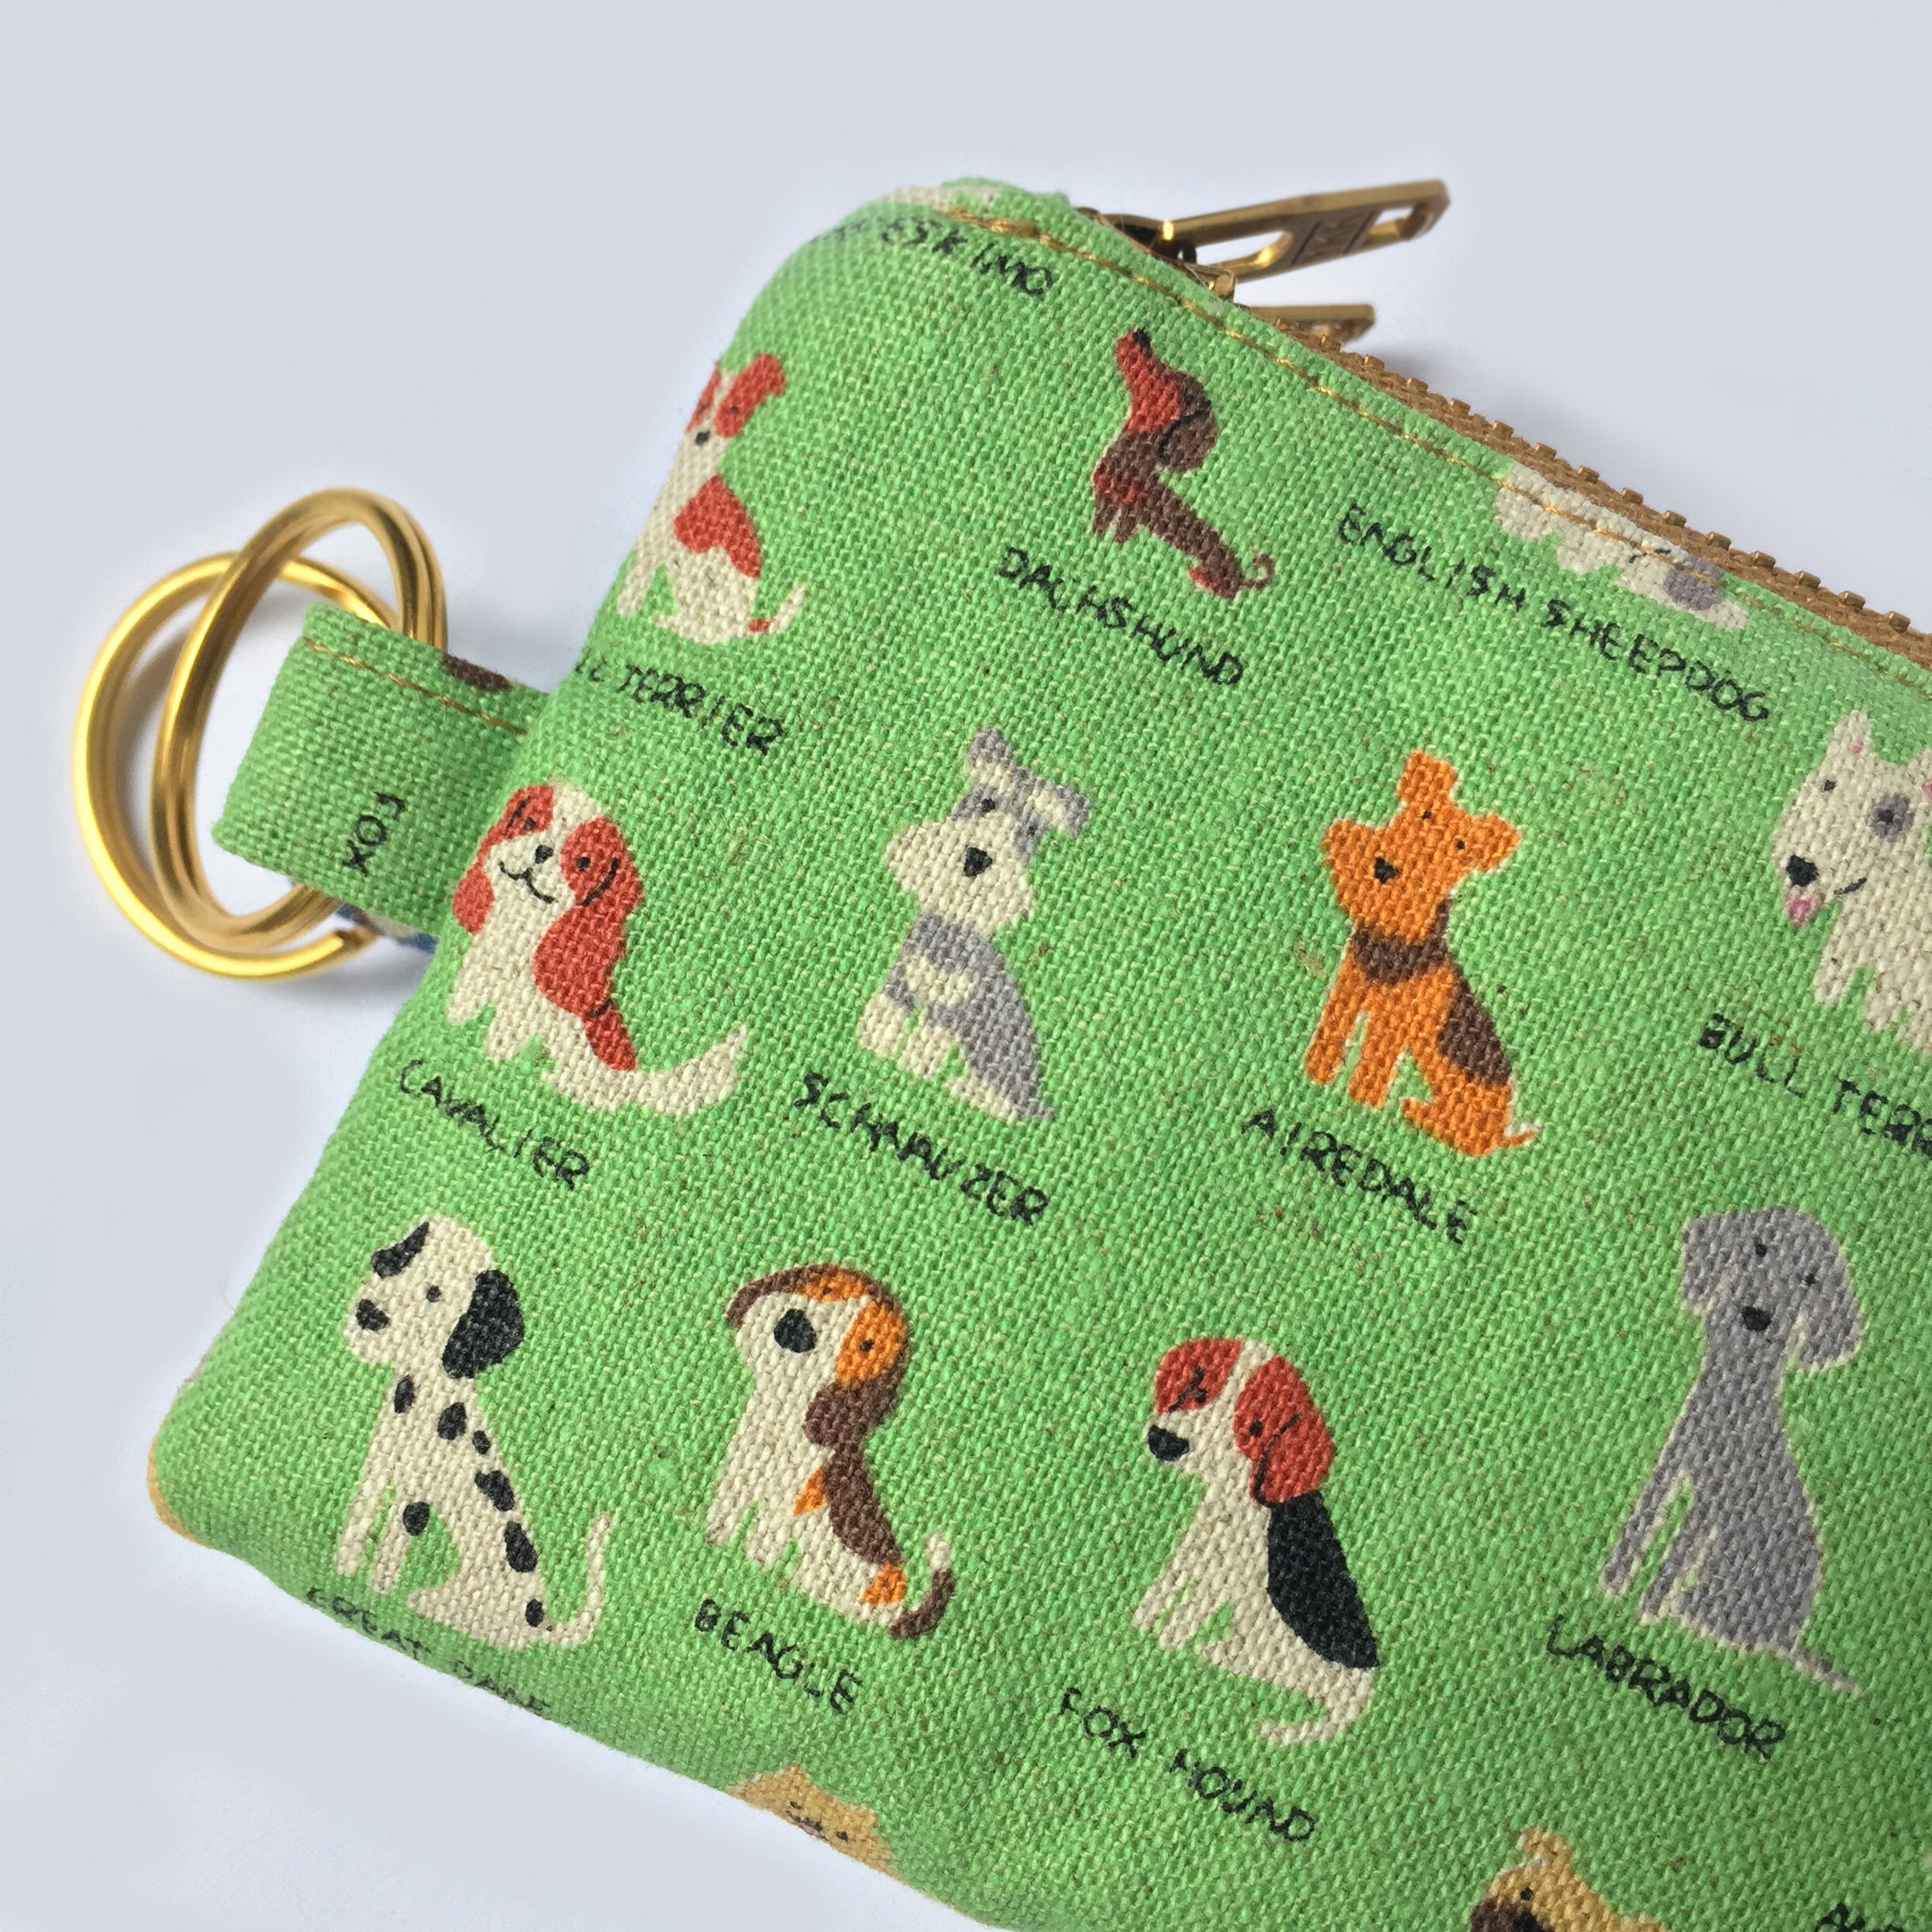 Womens Wallet Lanyard Puppy Key Chain Female Creative Cute Dog Key